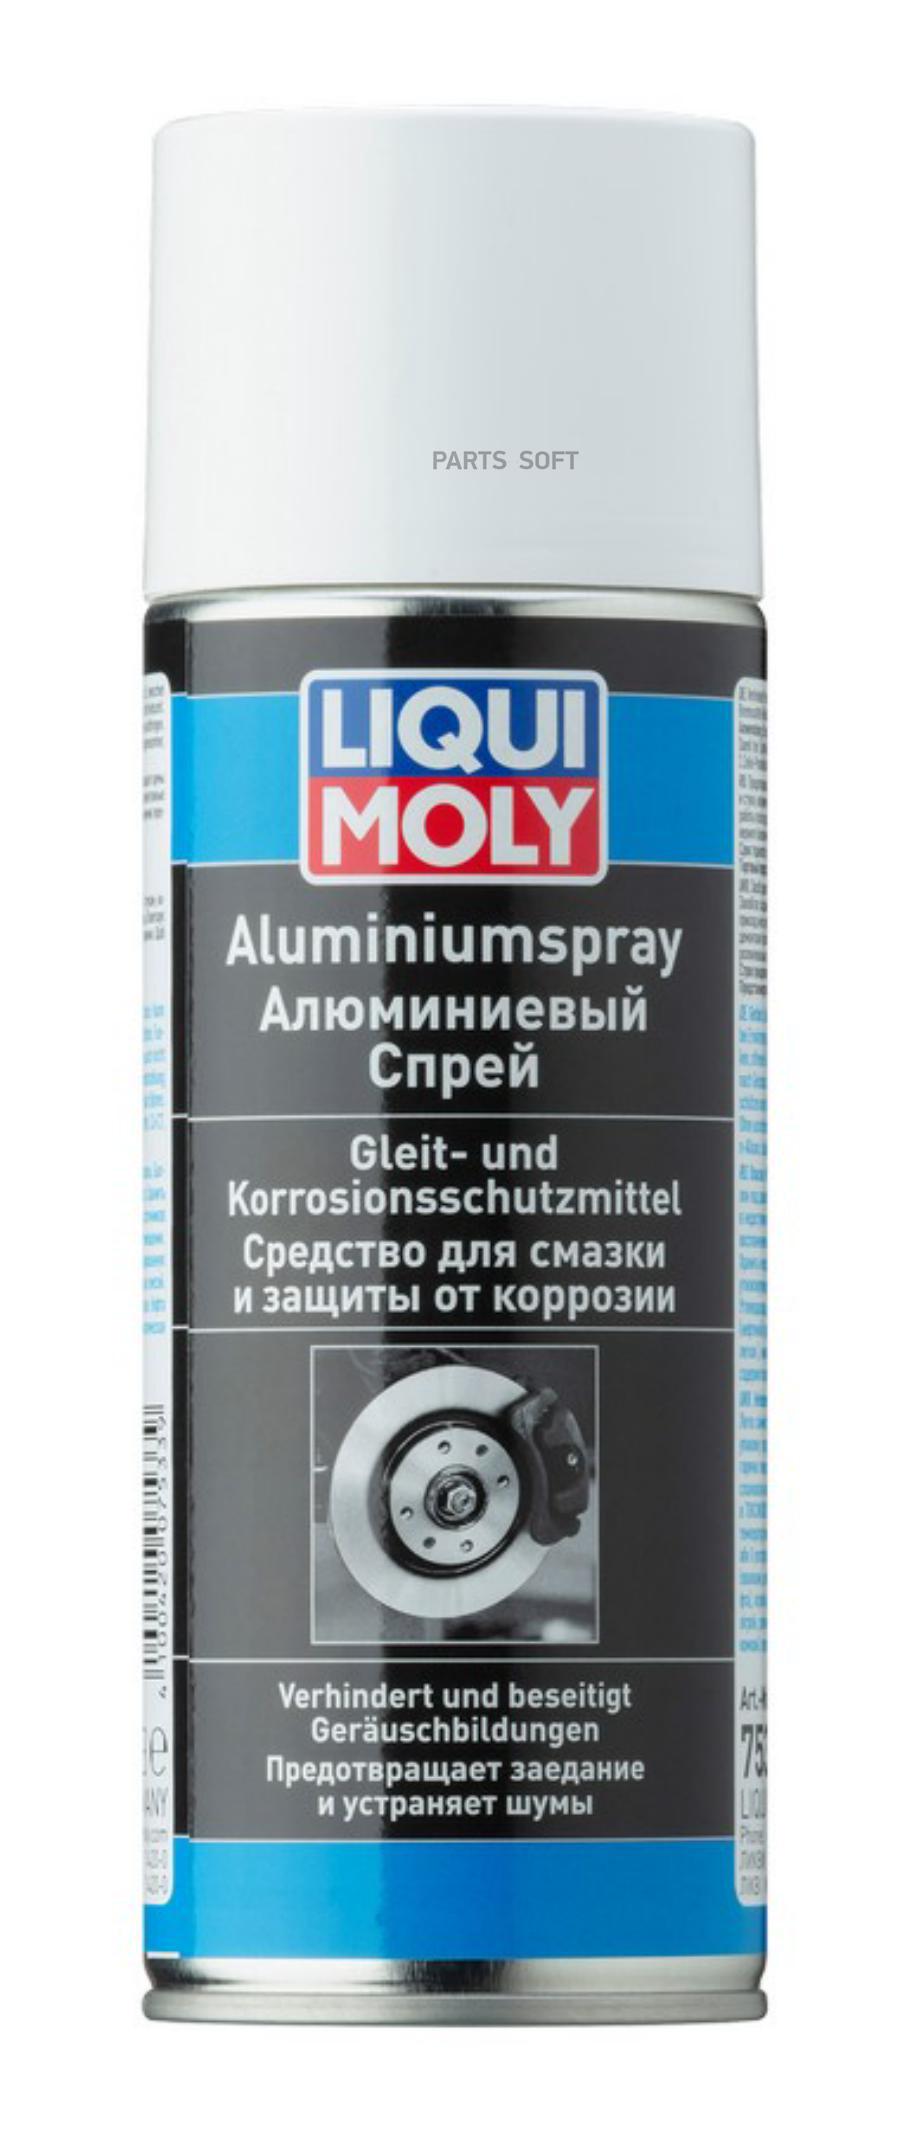 Аэрозольная смазка для тормозной системы Liqui Moly Bremsen-Anti